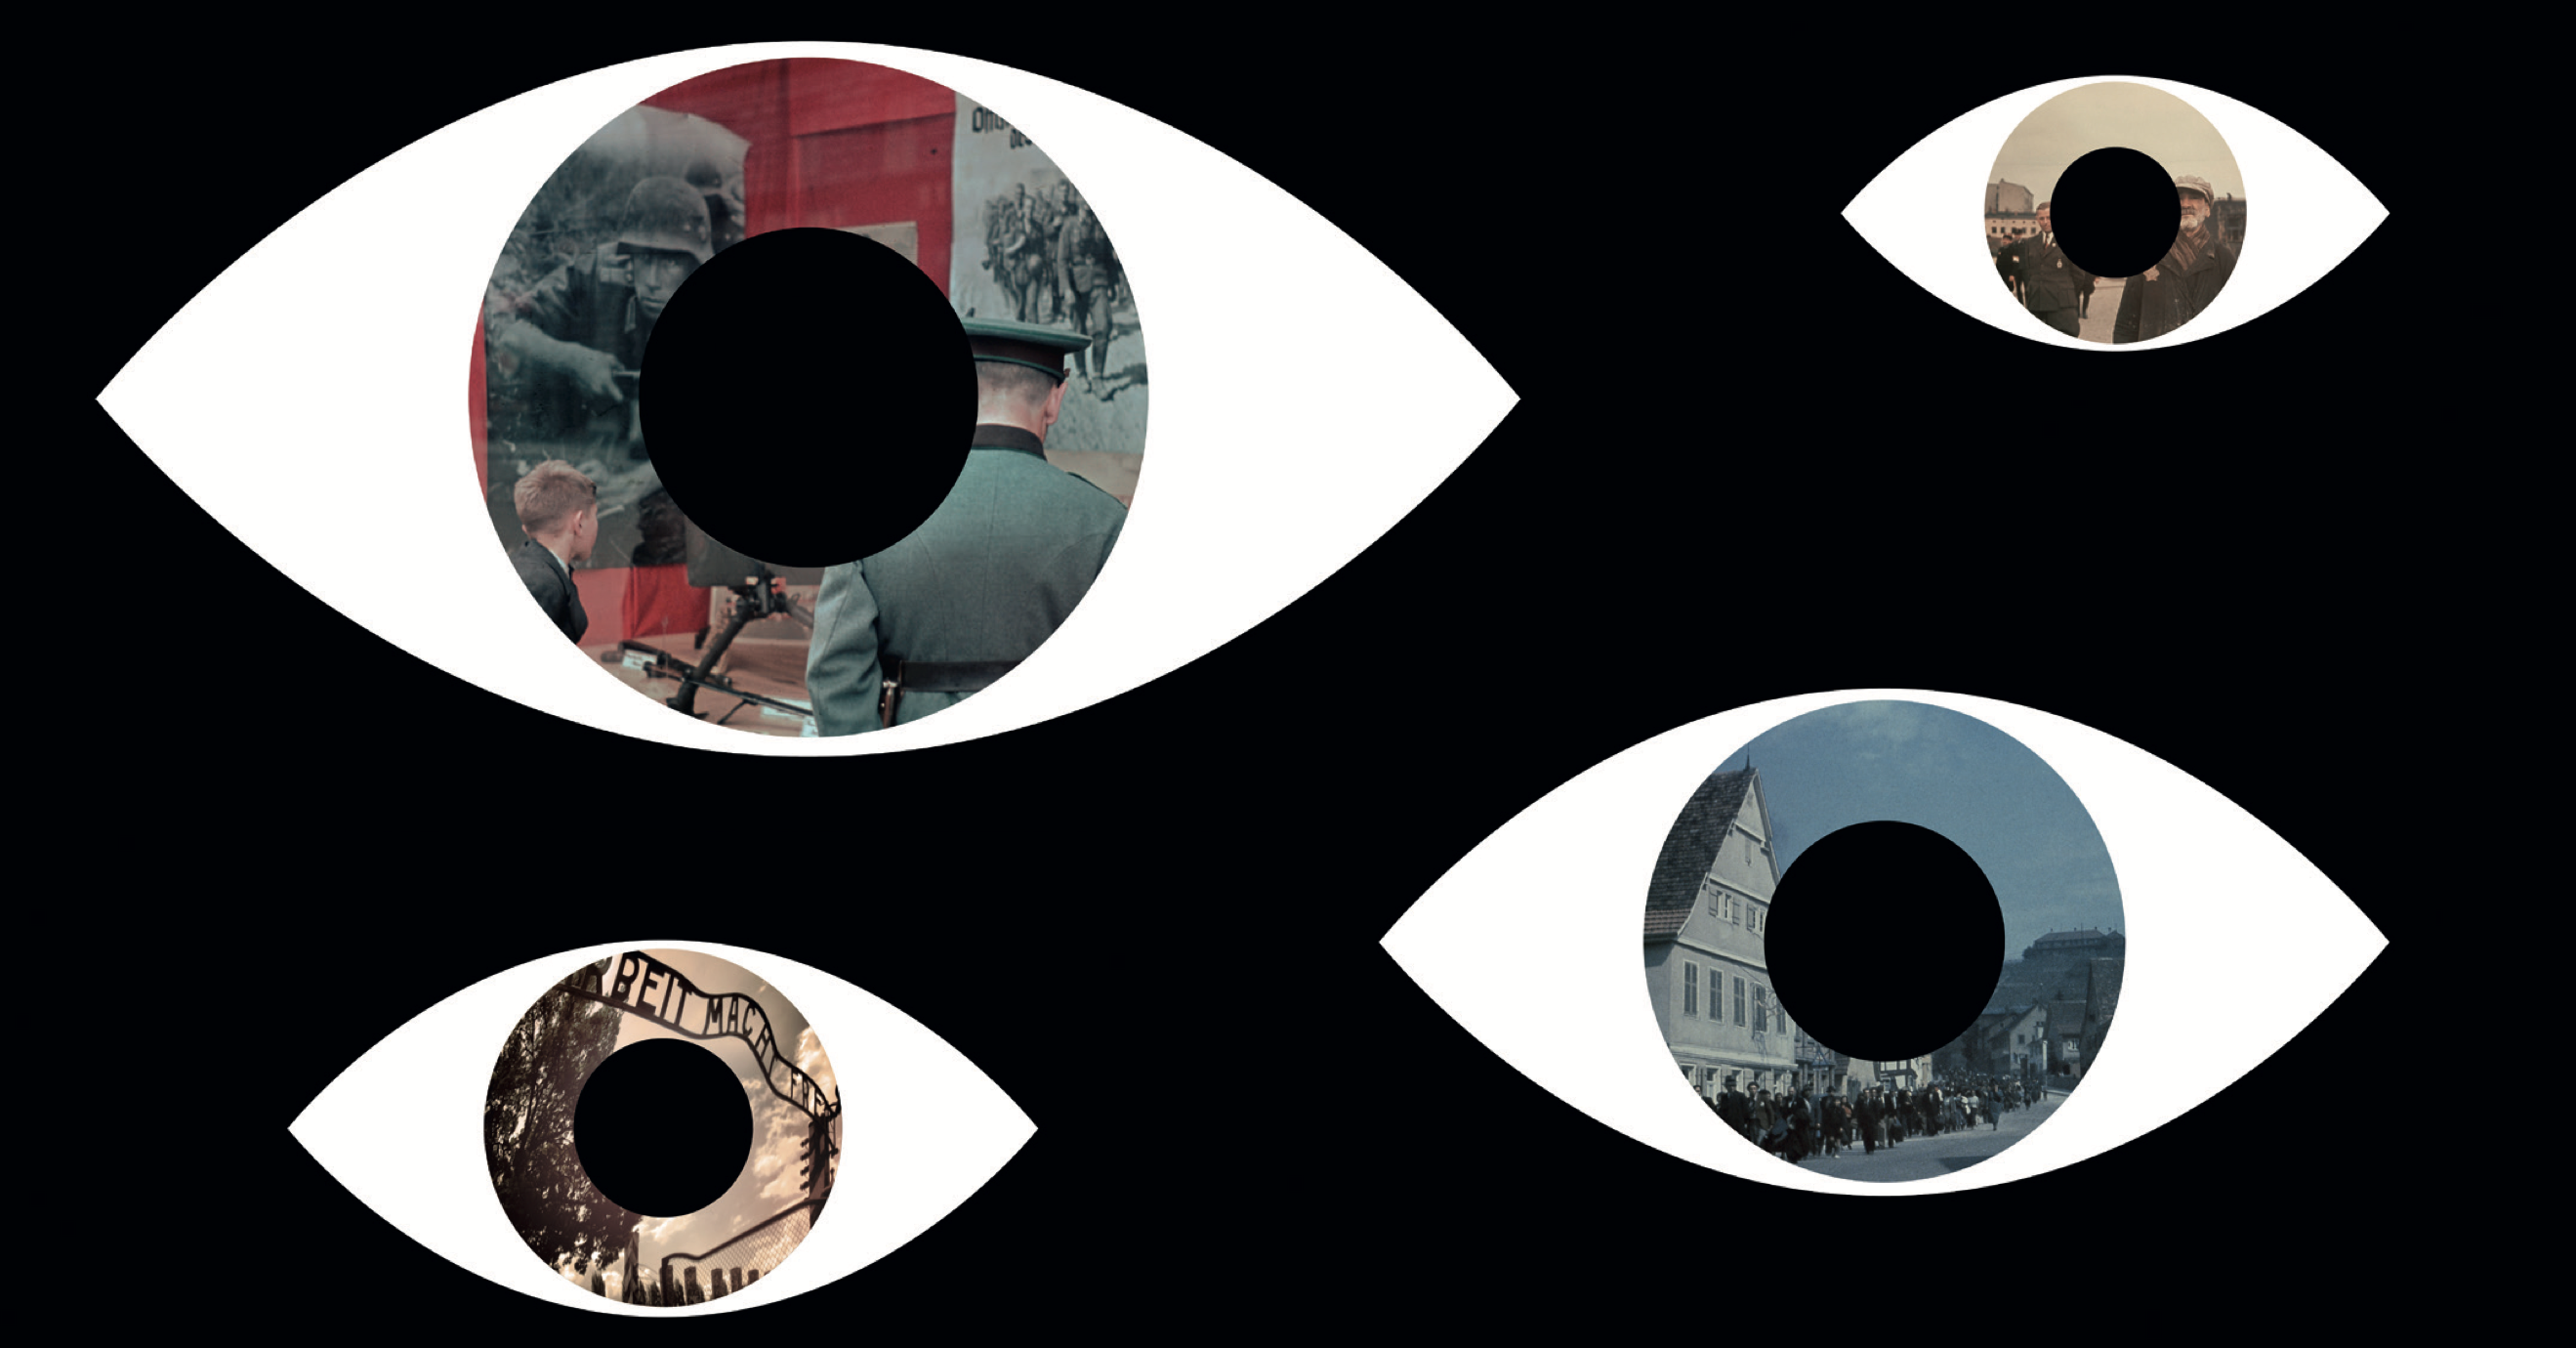 Ögon på svart bakgrund, i ögonens iris syns gamla bilder från andra världskriget.